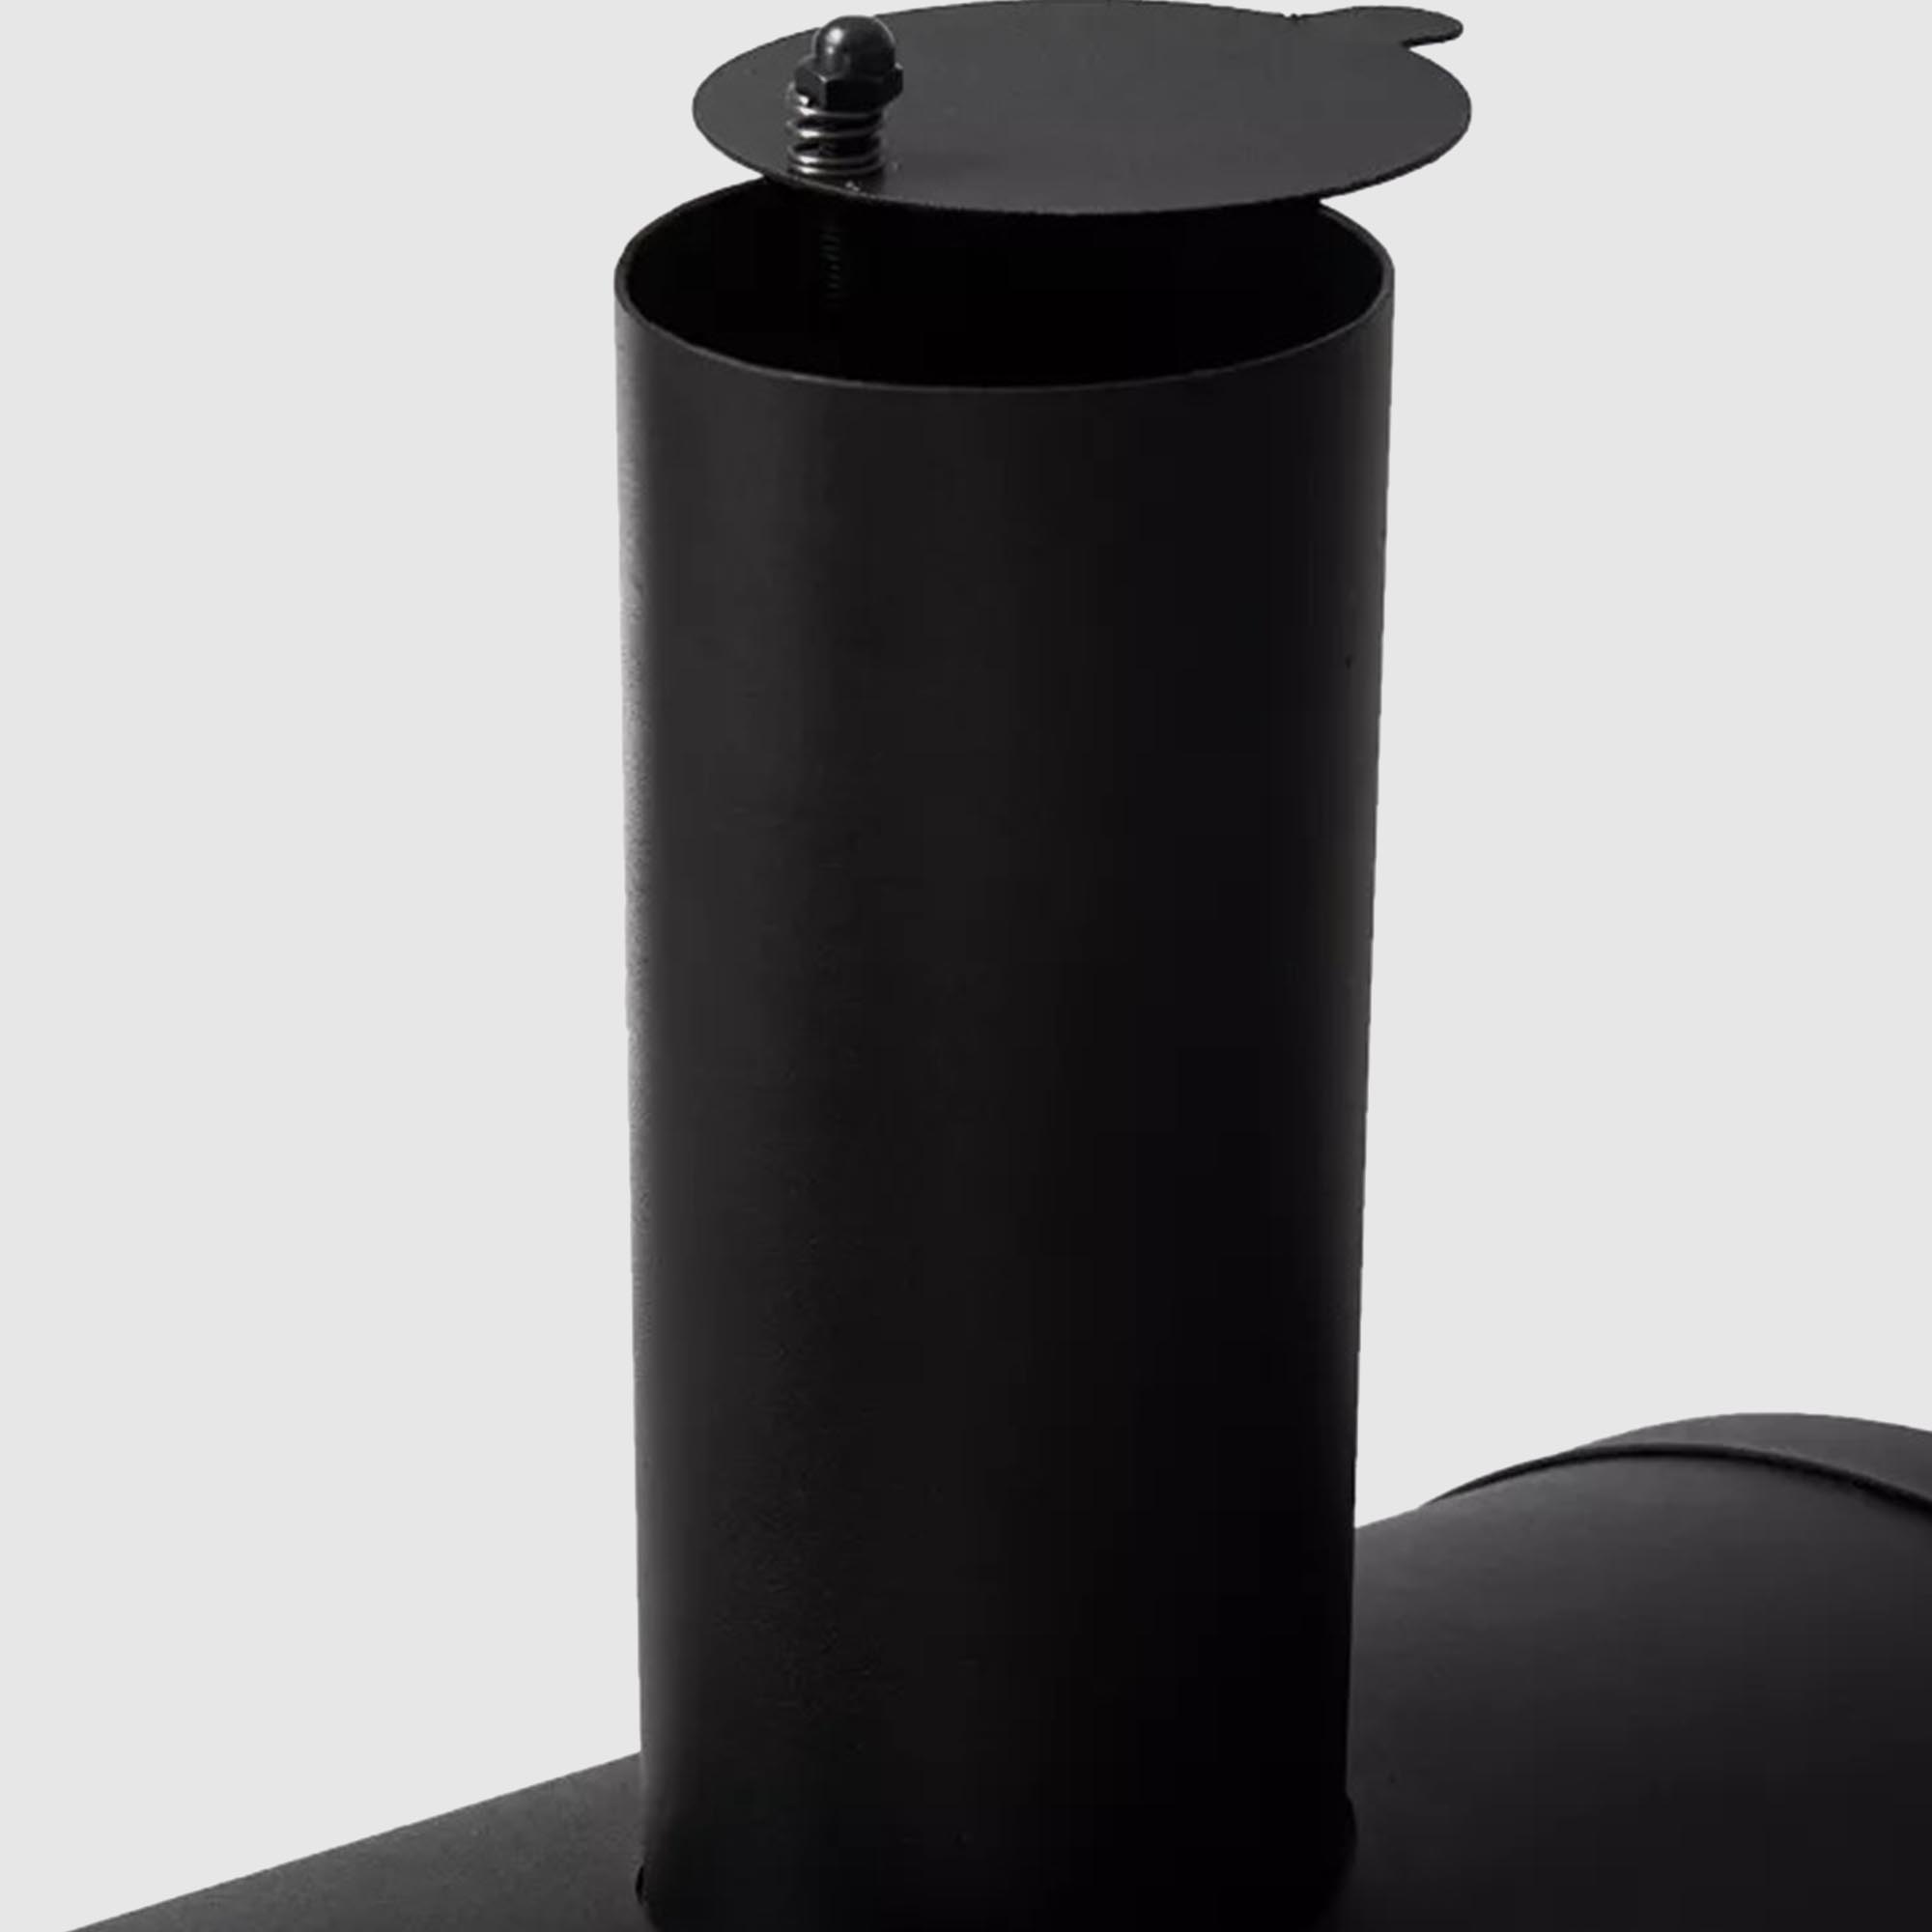 Гриль Gogarden CHEF-Master 74 XL, цвет чёрный, размер 67х44 см - фото 15